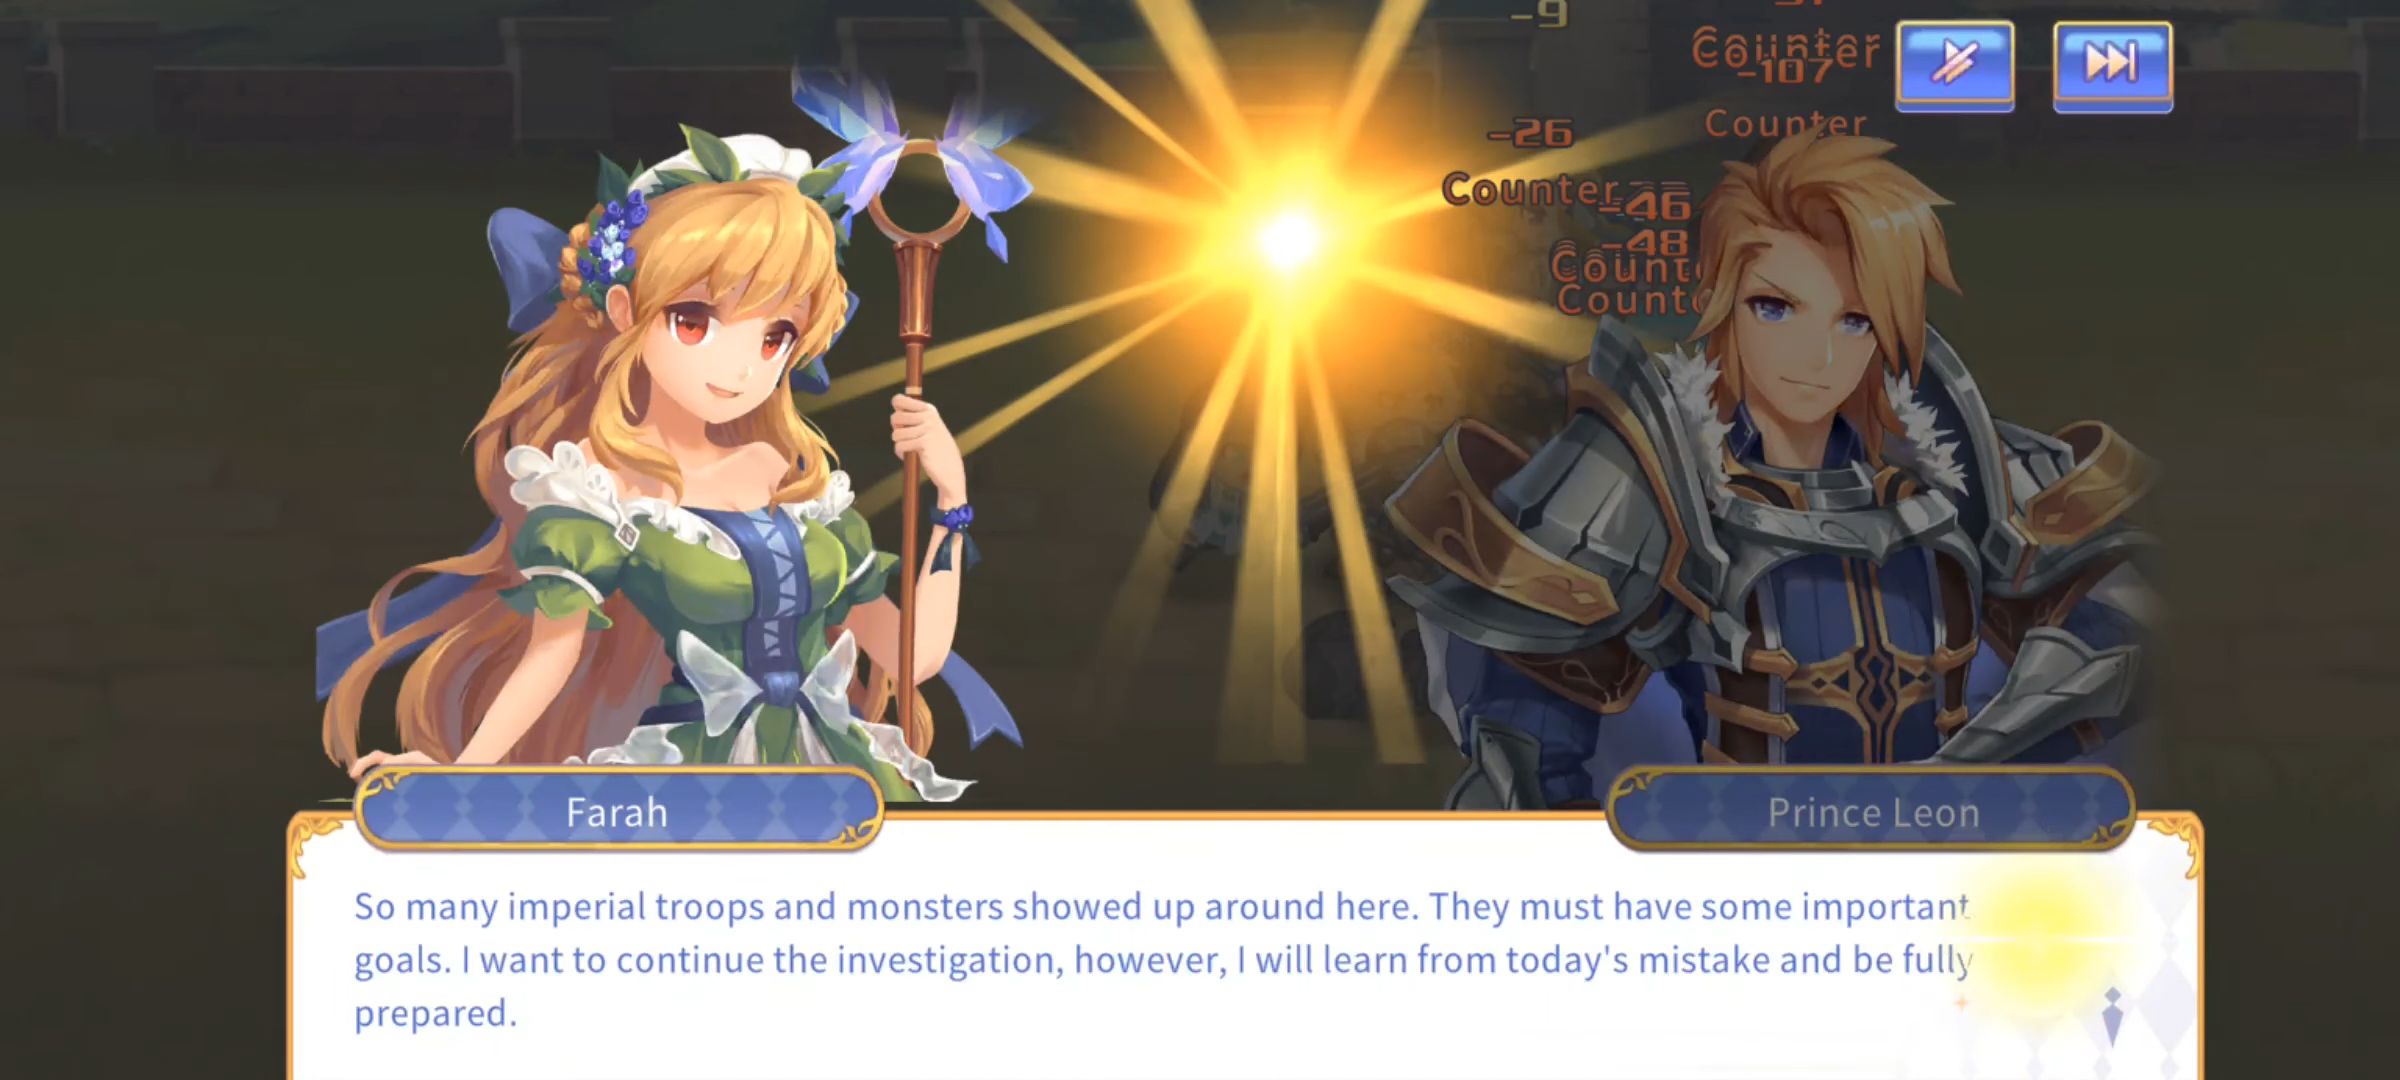 Royal Knight Tales - Android game screenshots.